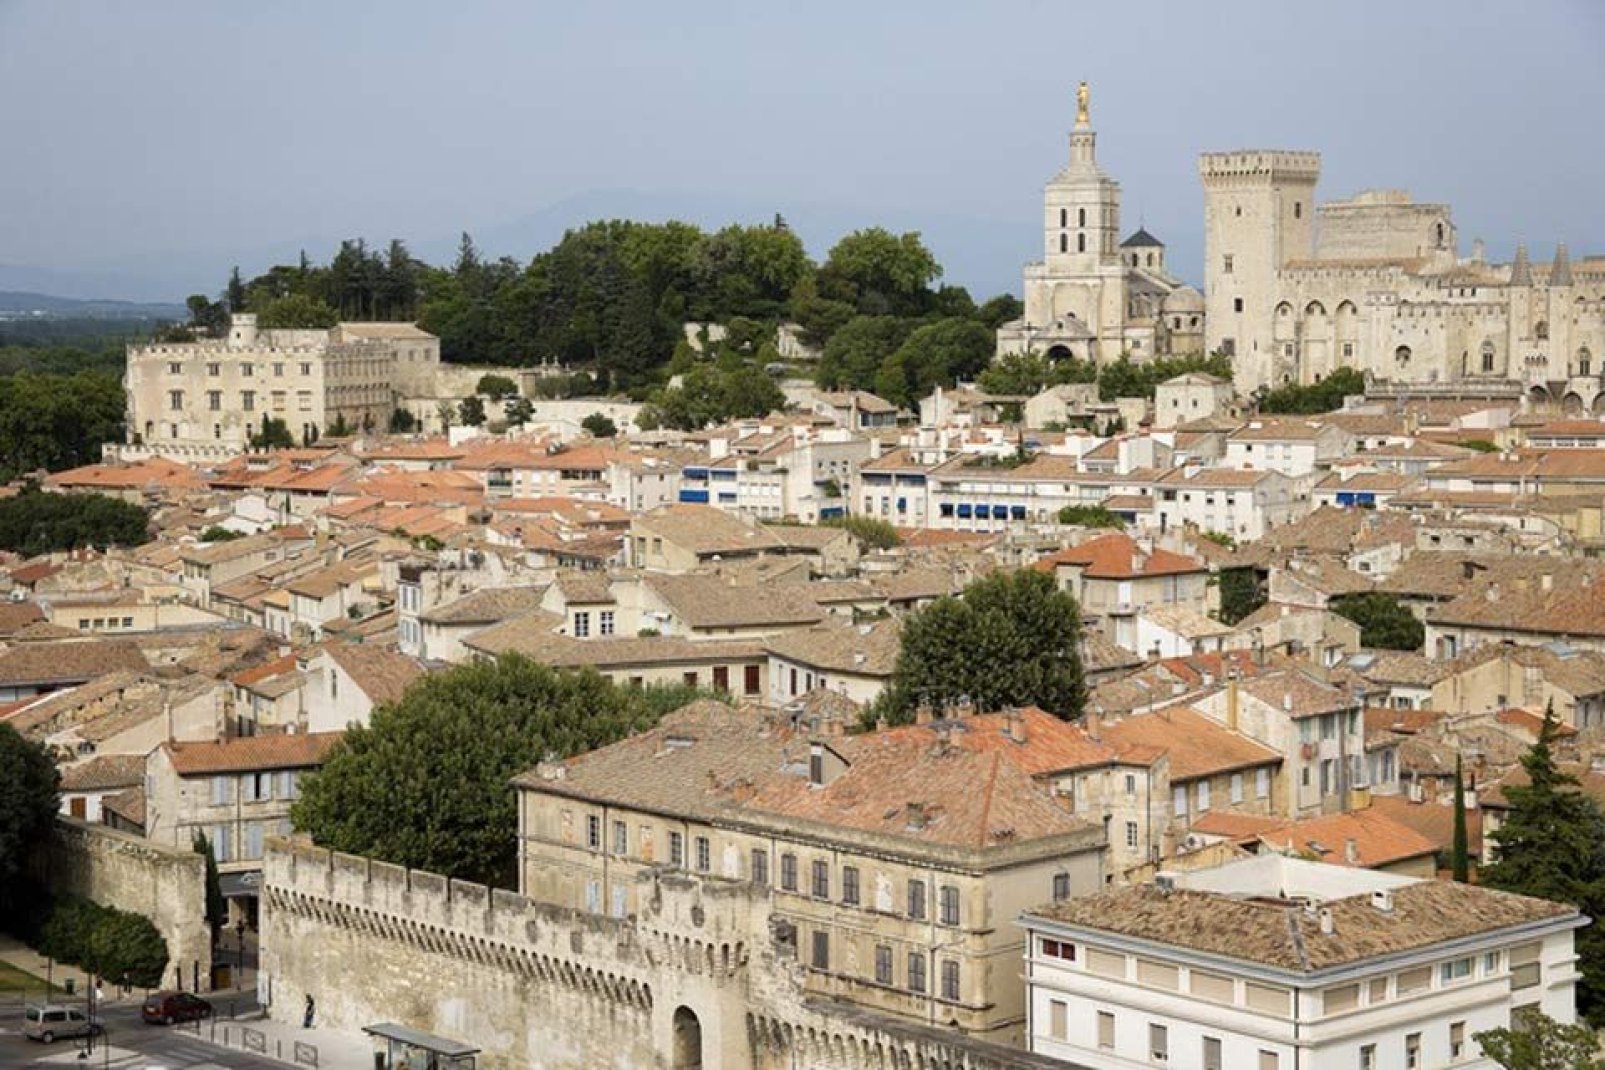 Avignone è riuscita a conservare molte vestigia dell'epoca papale, in particolar modo le mura e il centro storico, per cui è stata classificata nel patrimonio Unesco.